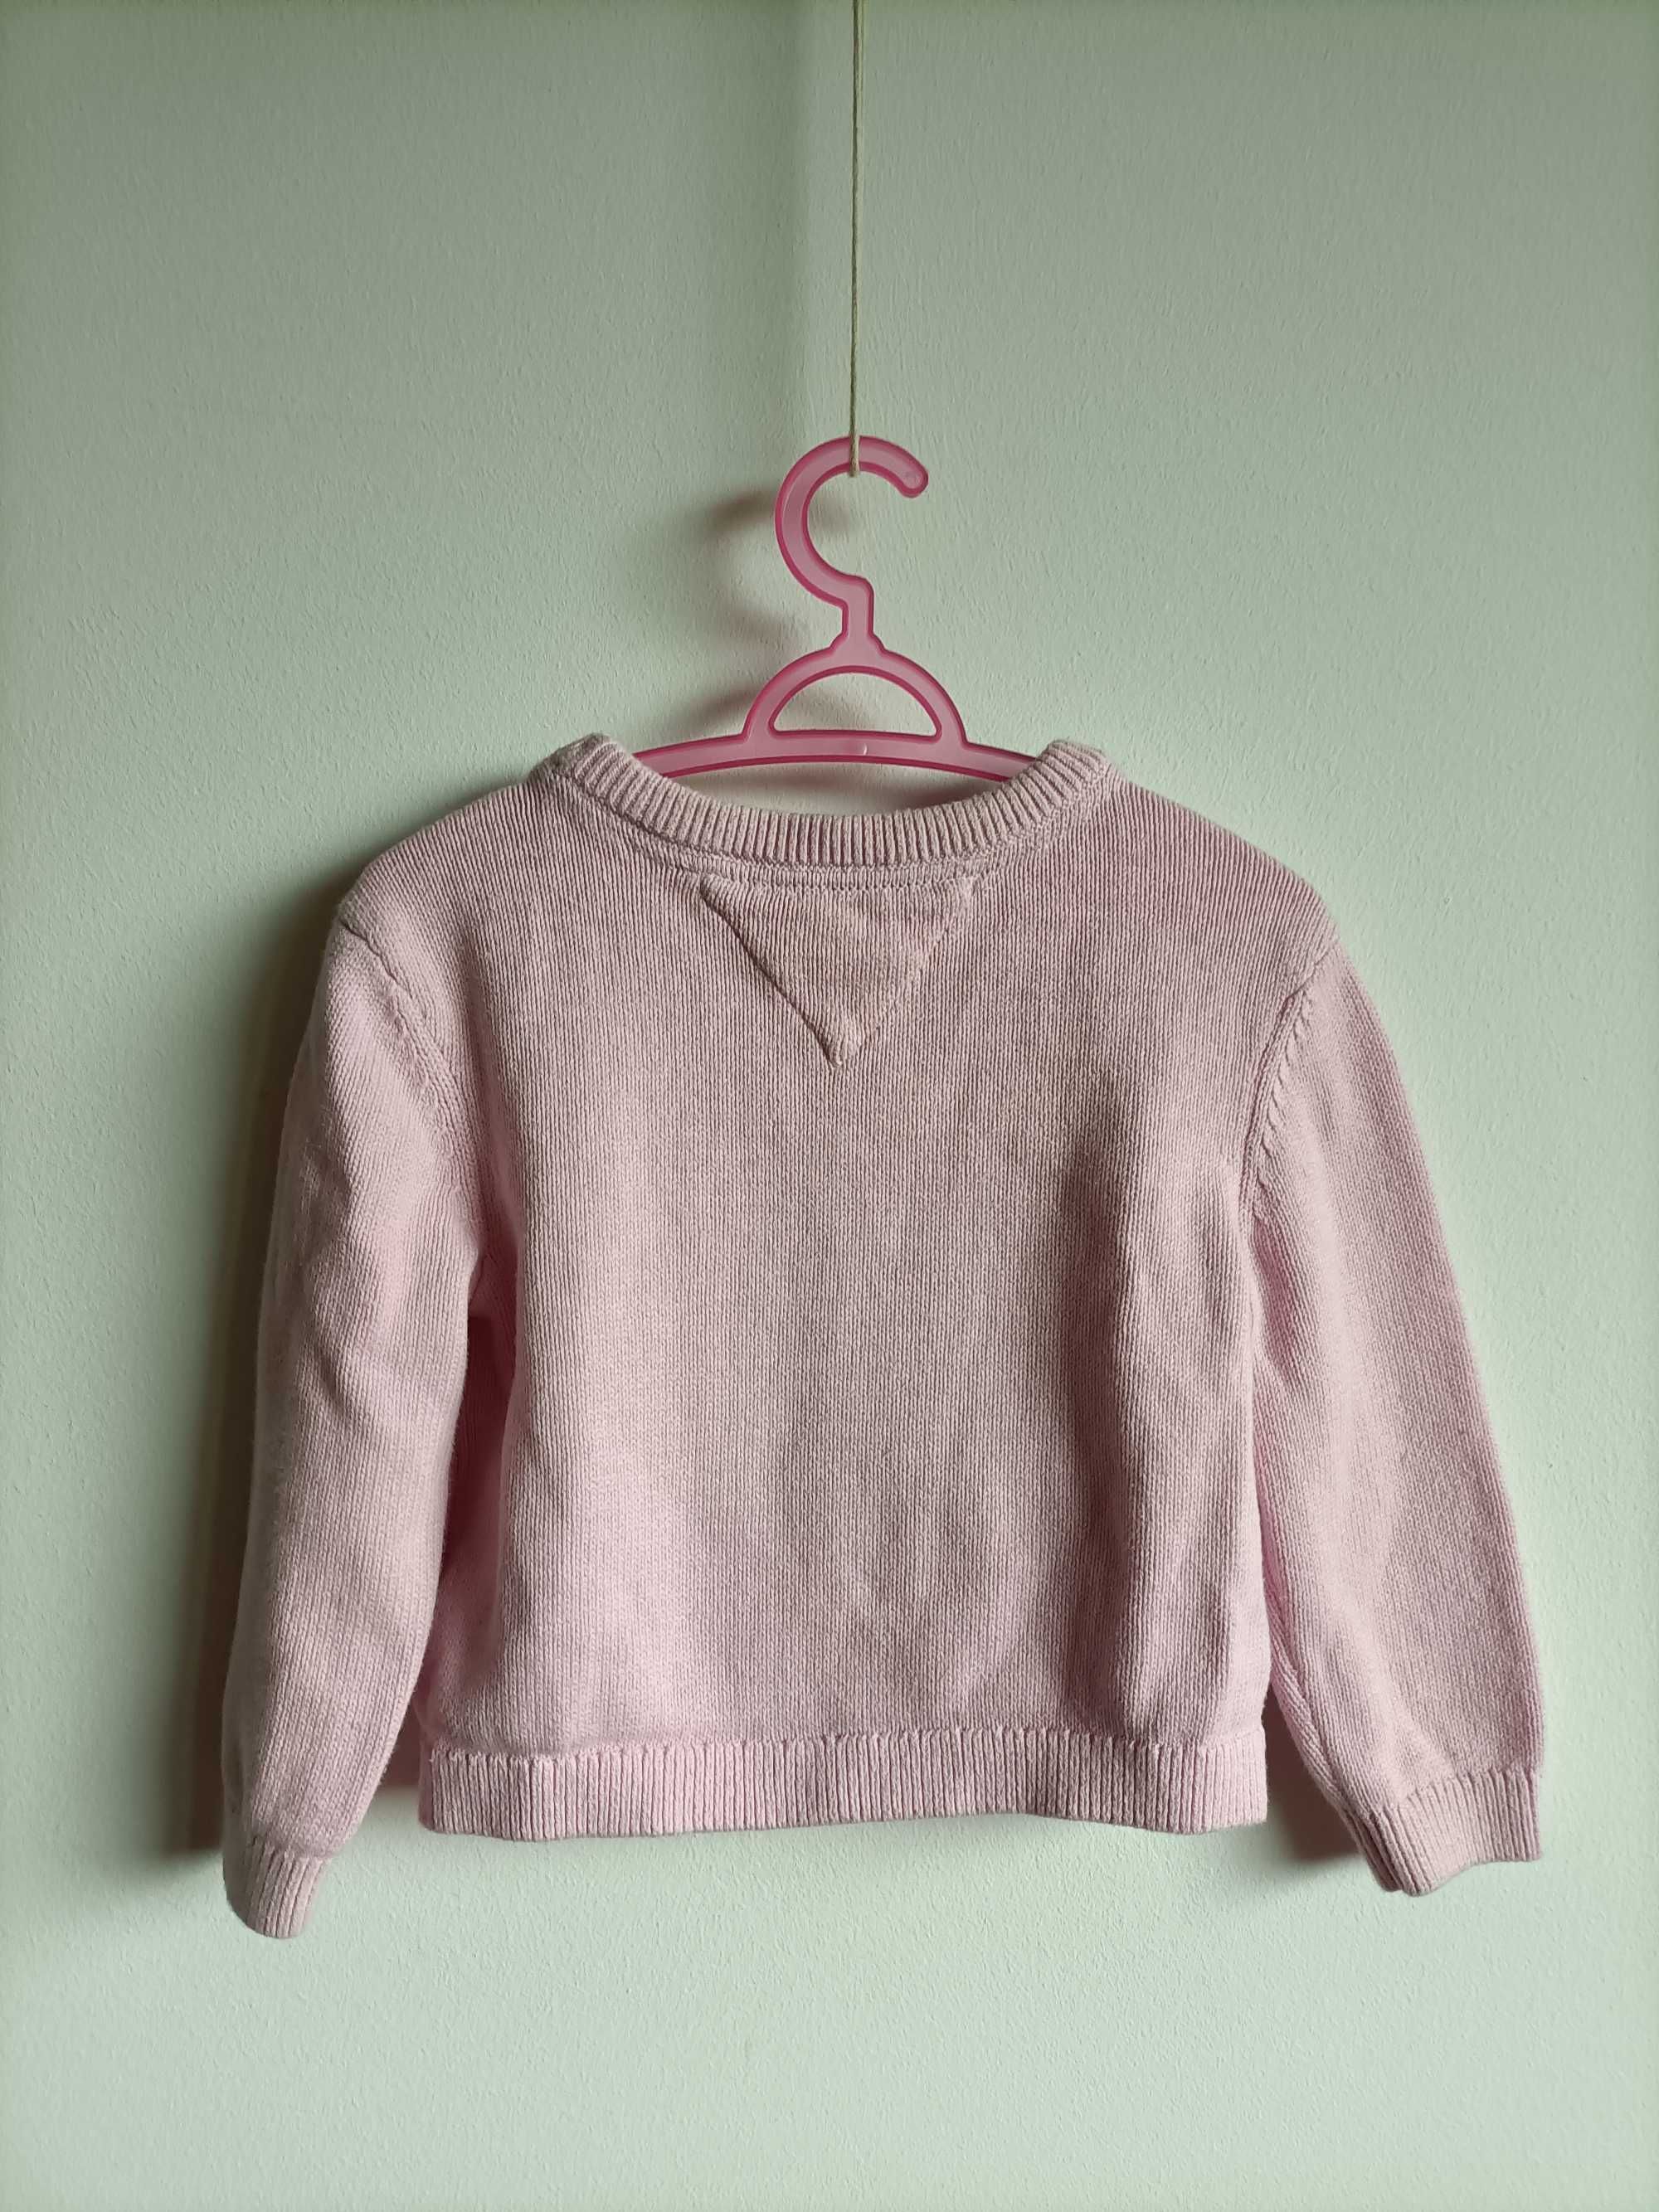 Sweterek Tommy Hilfiger 2-3lata dla dziewczynki 98cm różowy